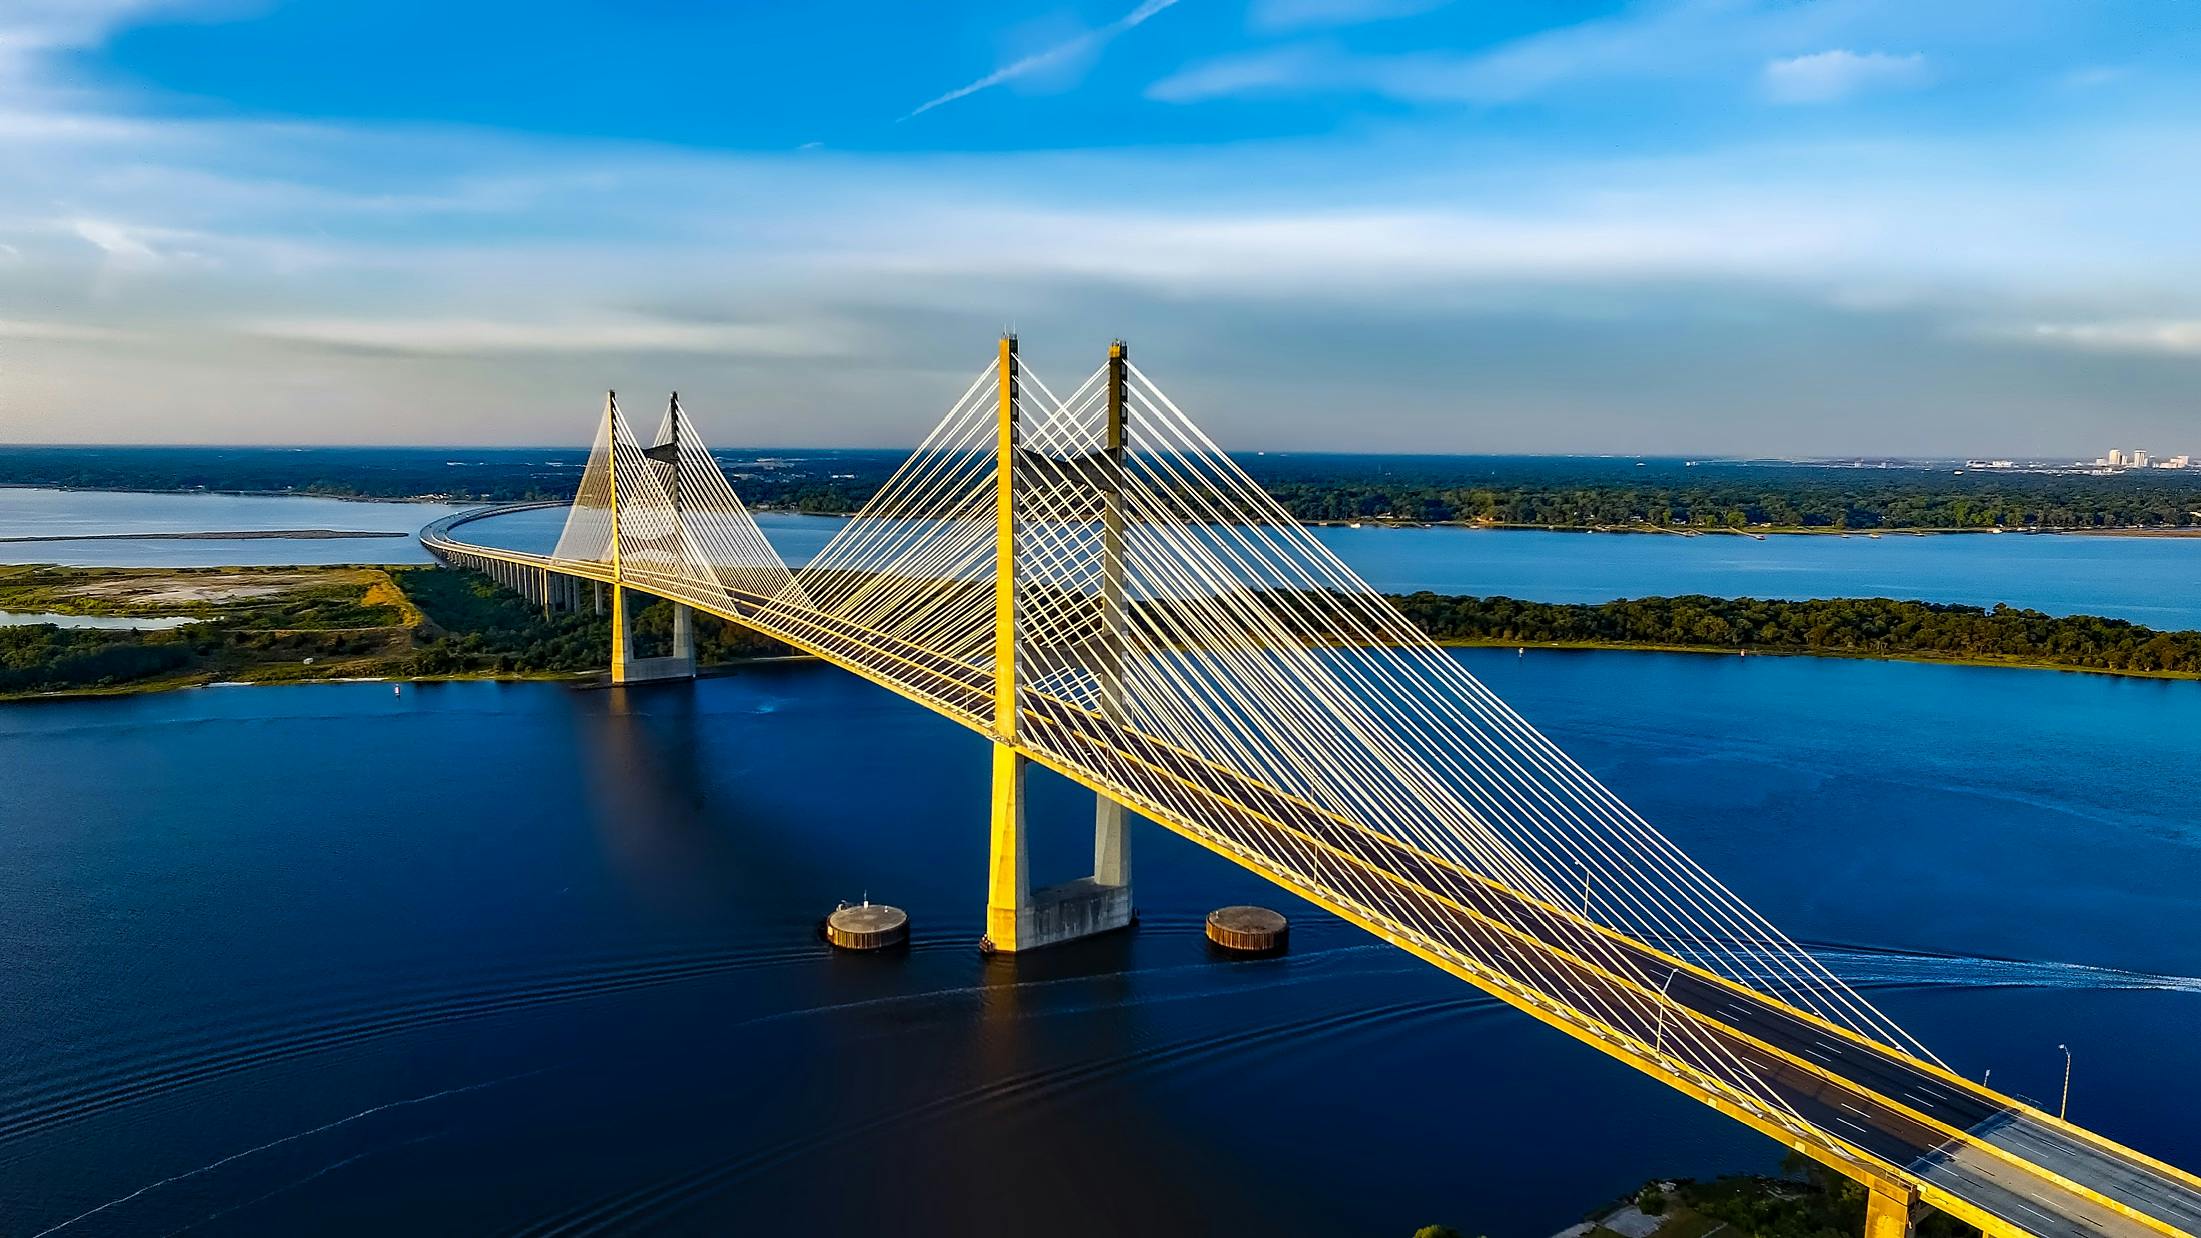 Betonbrücke am Gewässer. | Quelle: Pexels